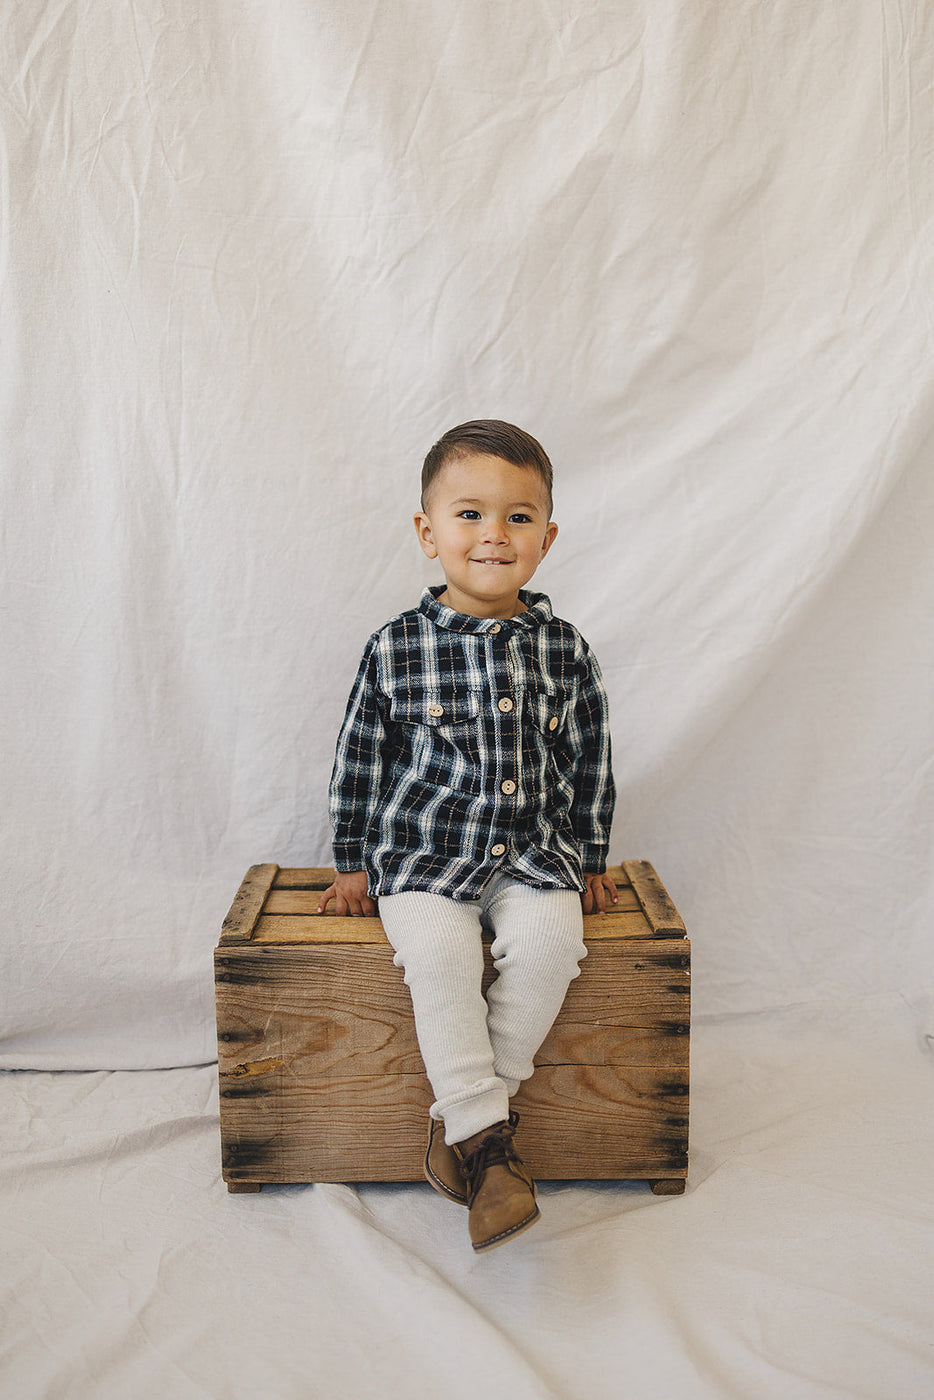 a boy sitting on a wooden box